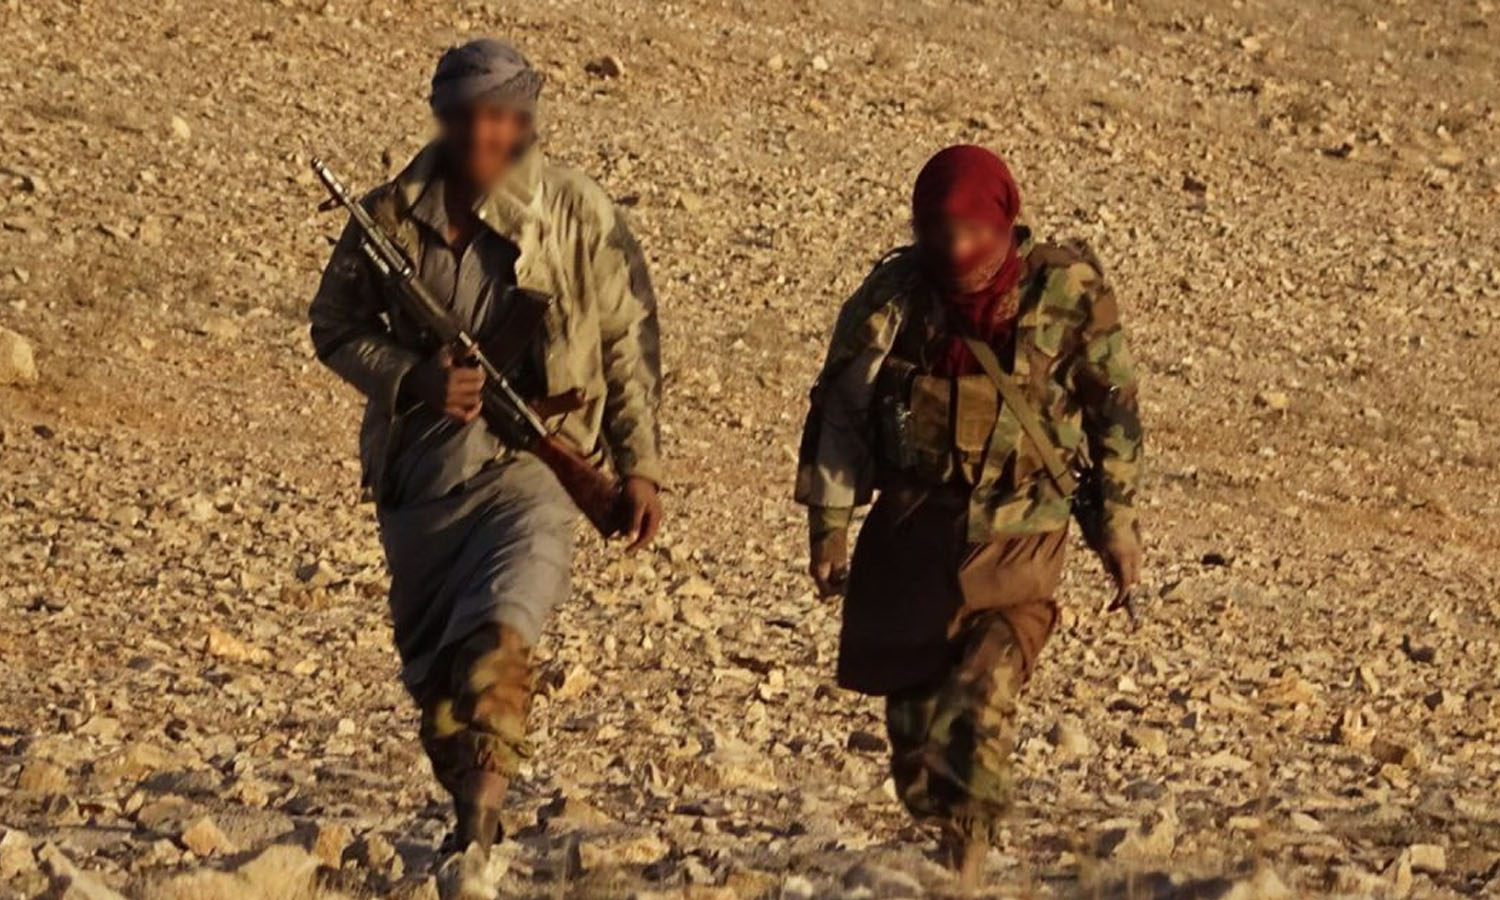 مقاتلان من تنظيم "الدولة" في منطقة البادية شرقي سوريا- نيسان 2022 (المعرف الرسمي للتنظيم)